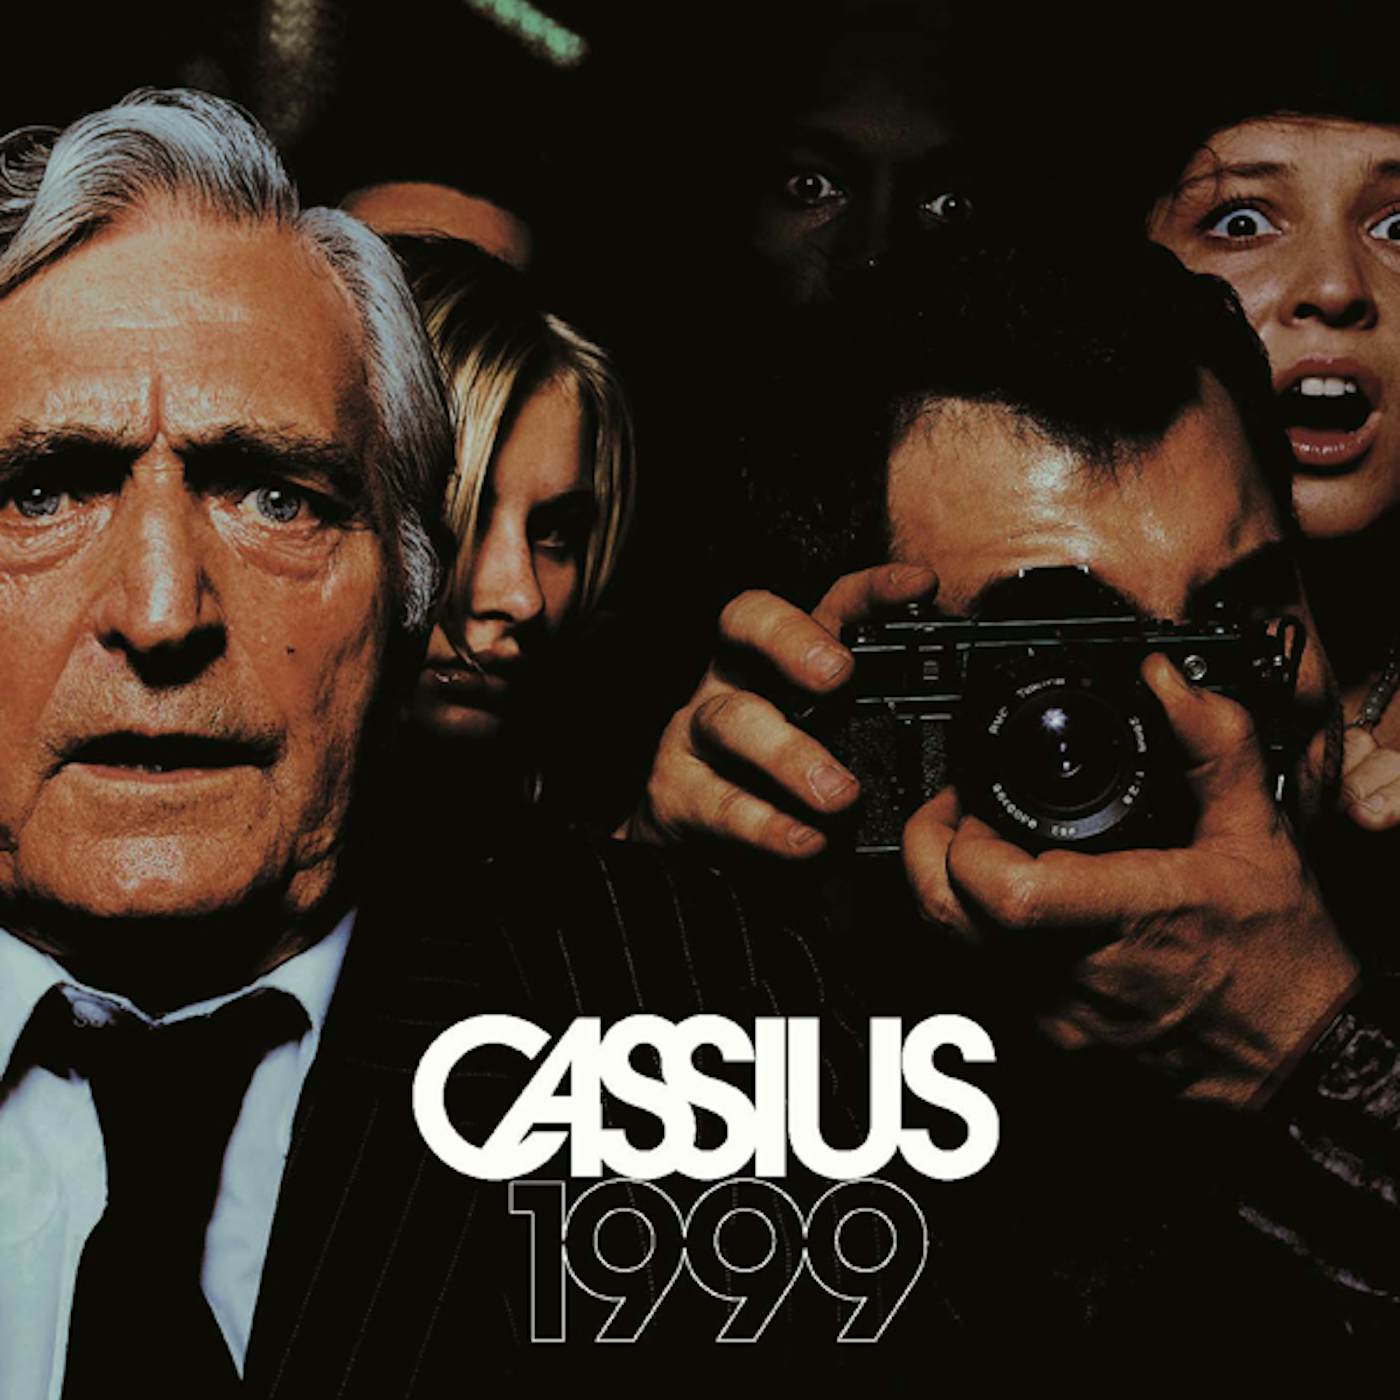 Cassius 1999 Vinyl Record